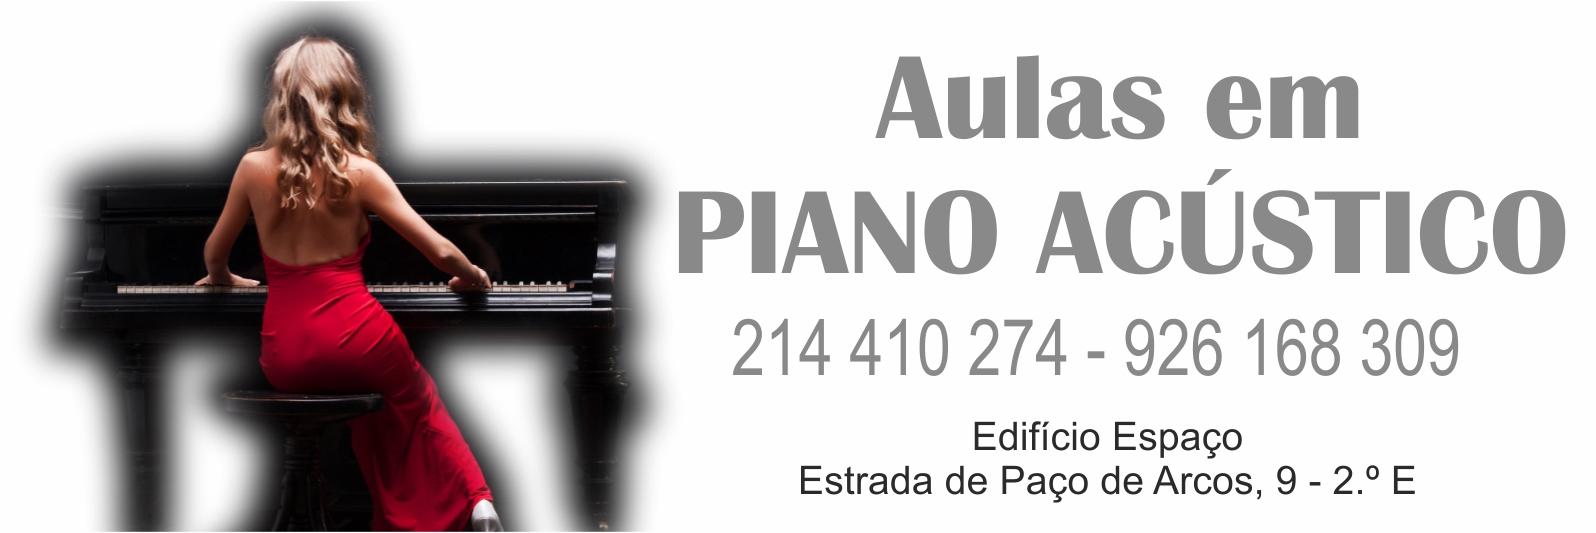 Aulas de piano - Aulas de Piano em Oeiras e Carcavelos